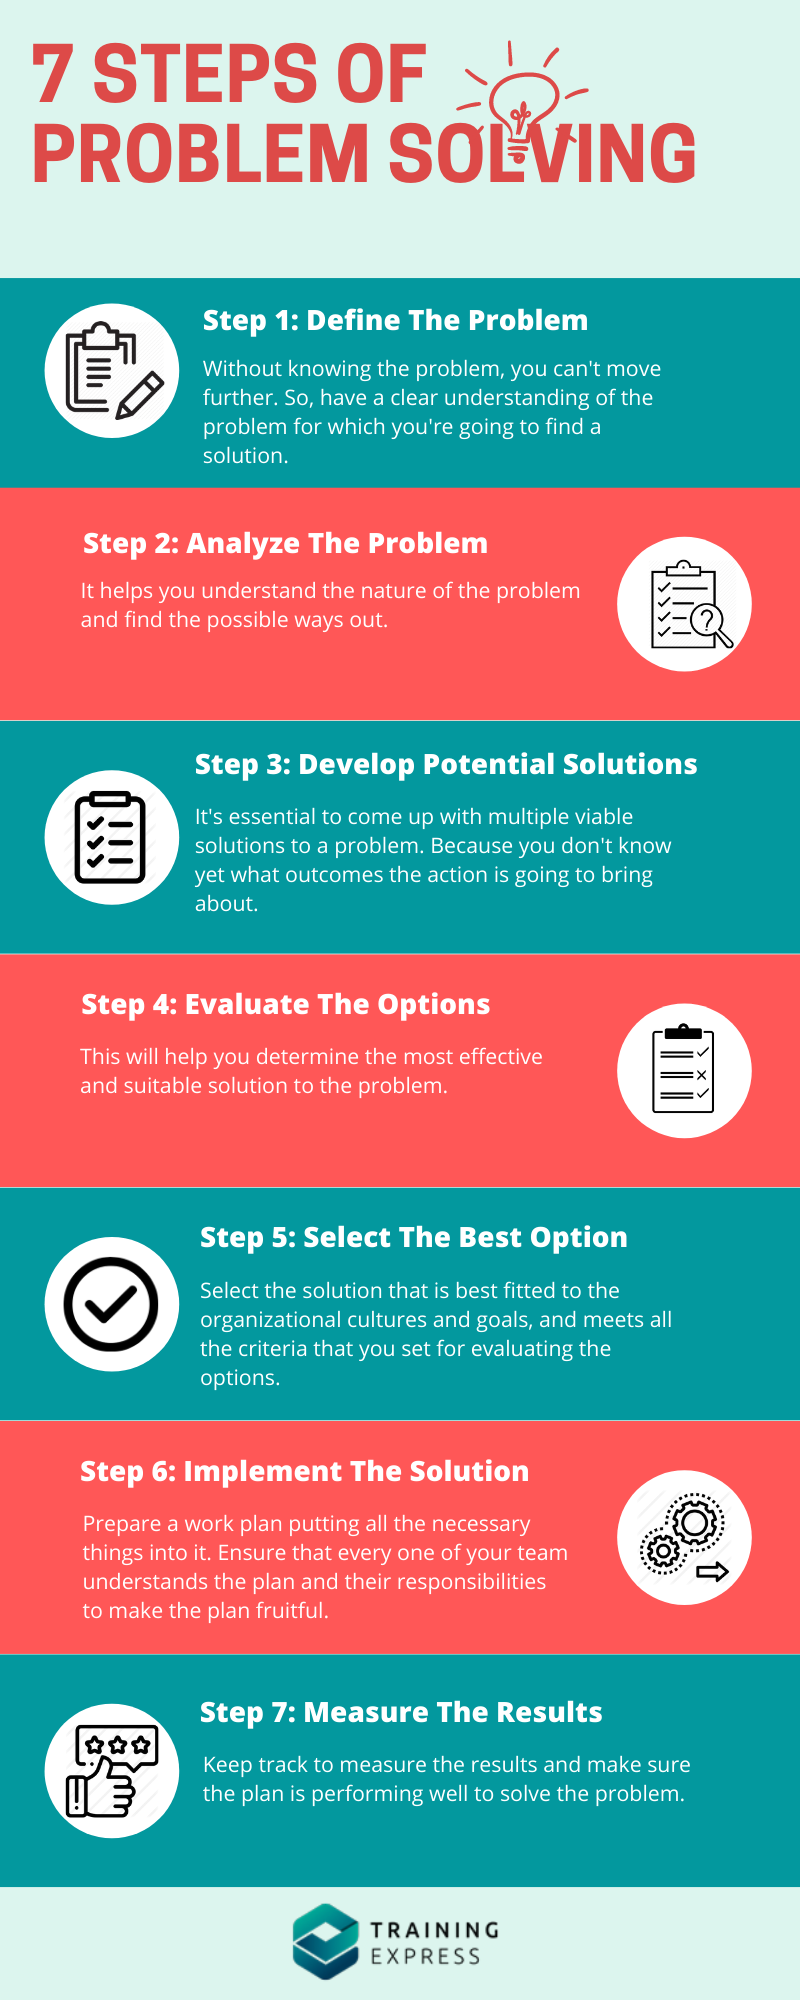 7 Steps of Problem Solving